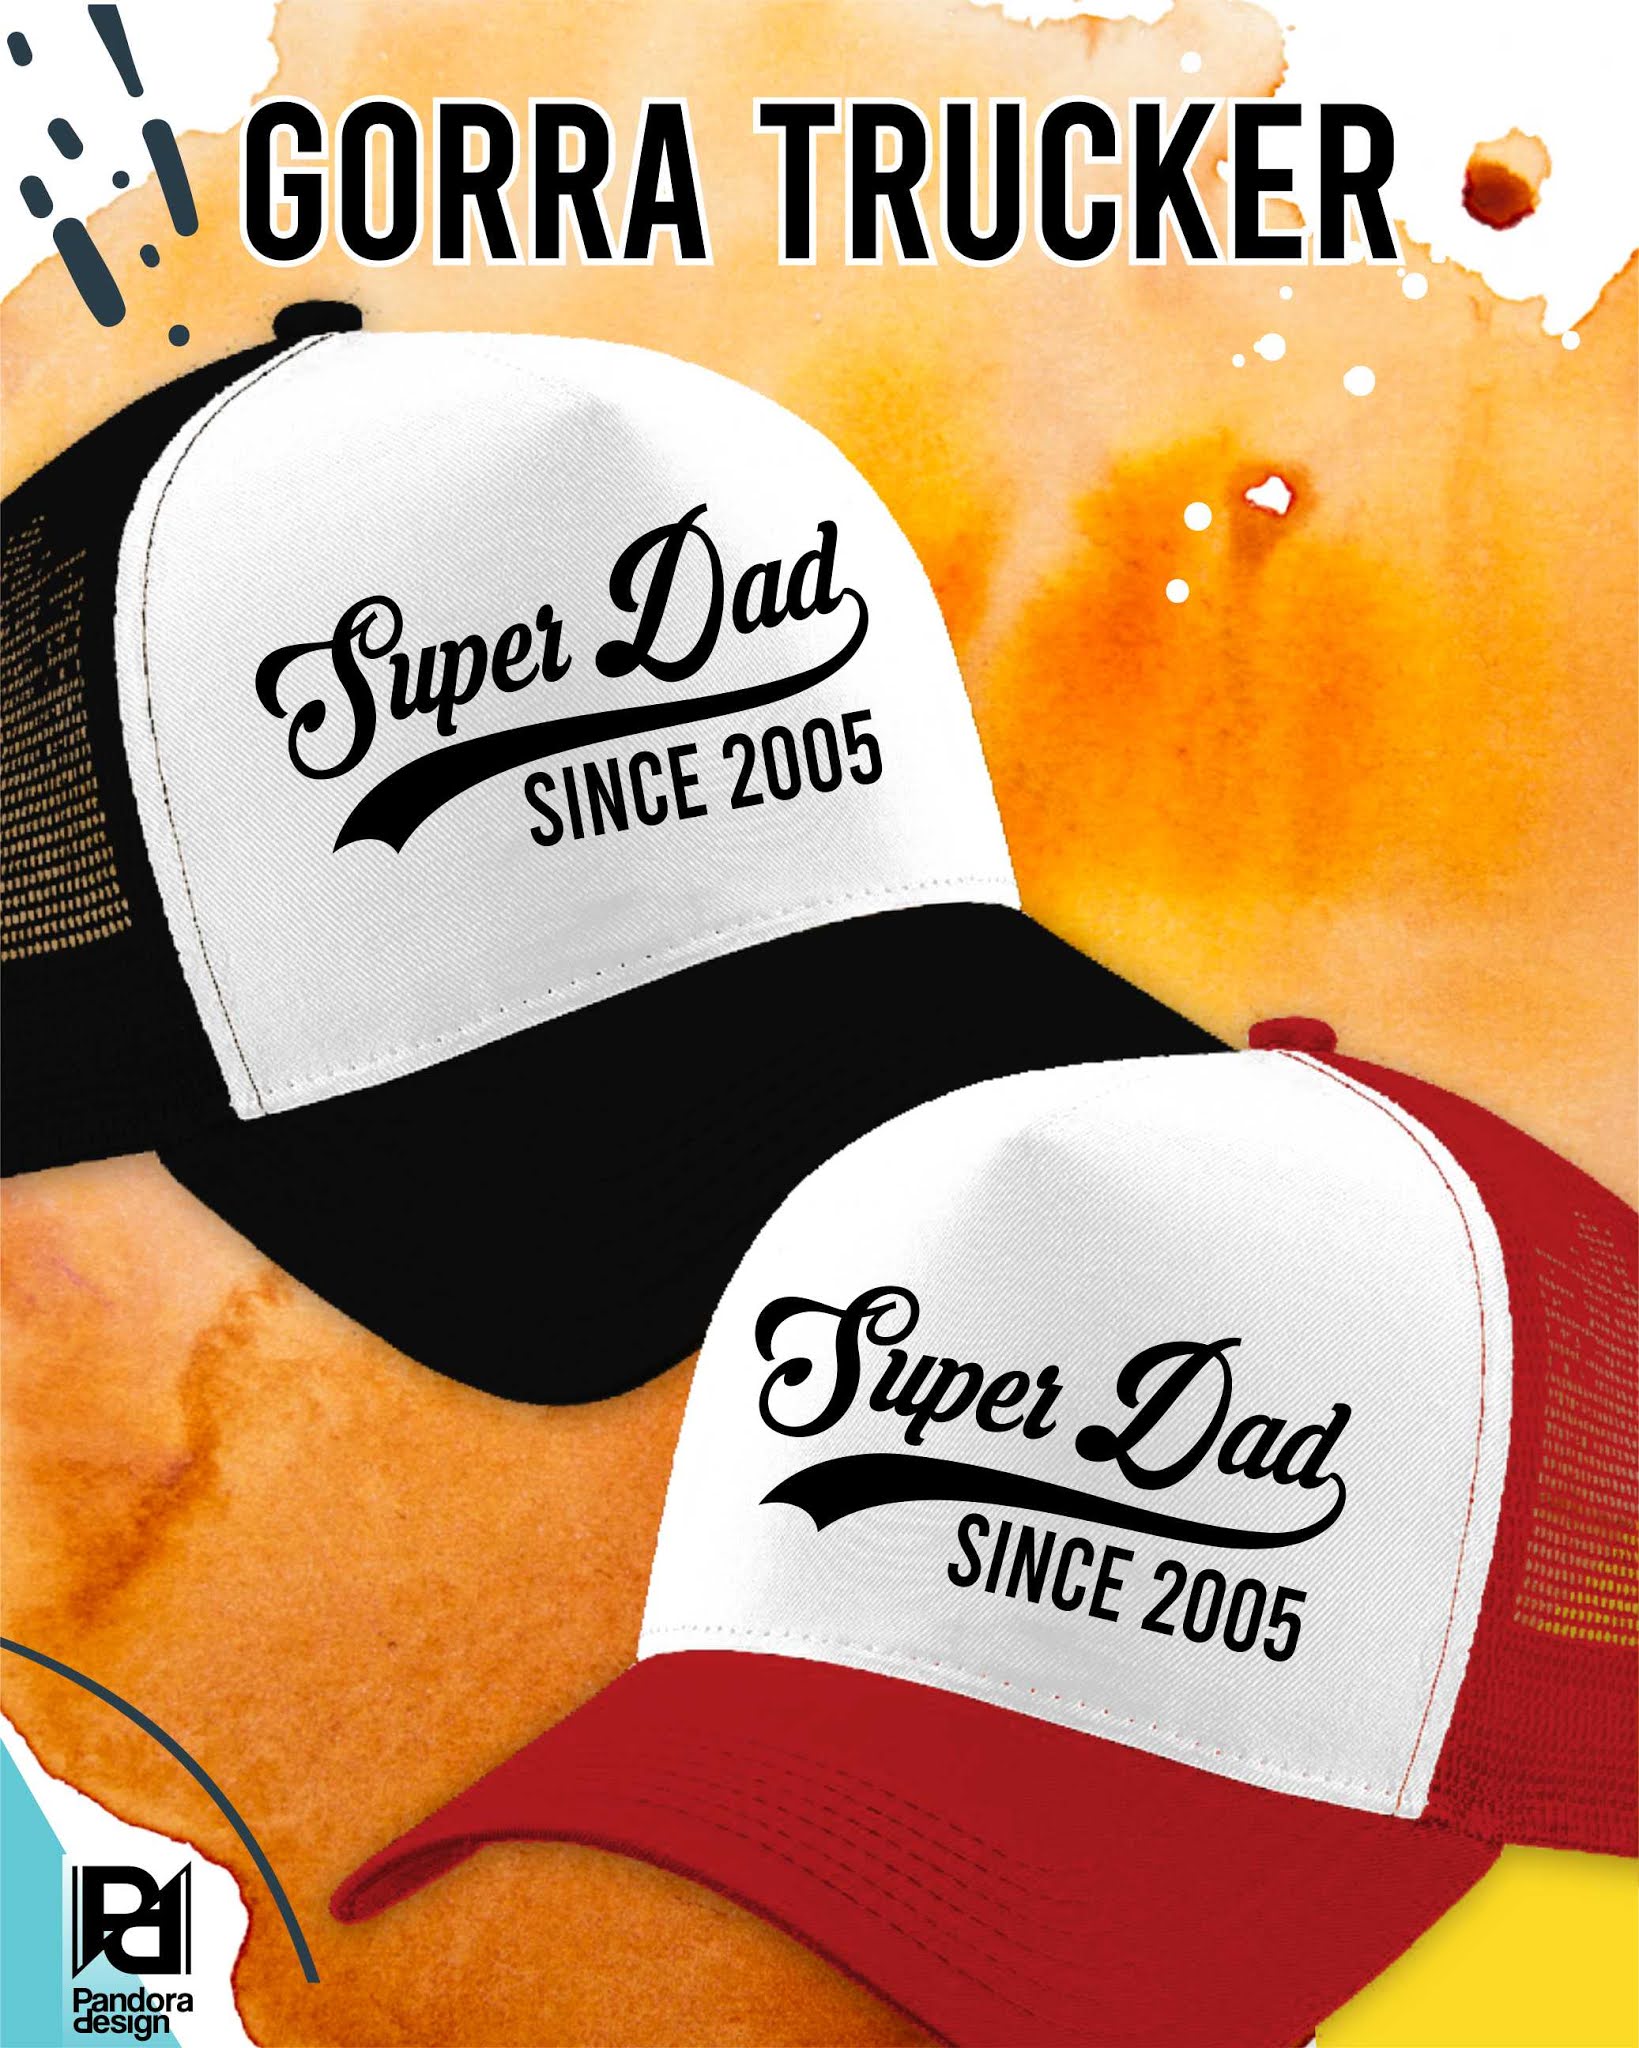 Gorras personalizadas para Dia del Padre | Pandora Design-Portafolio